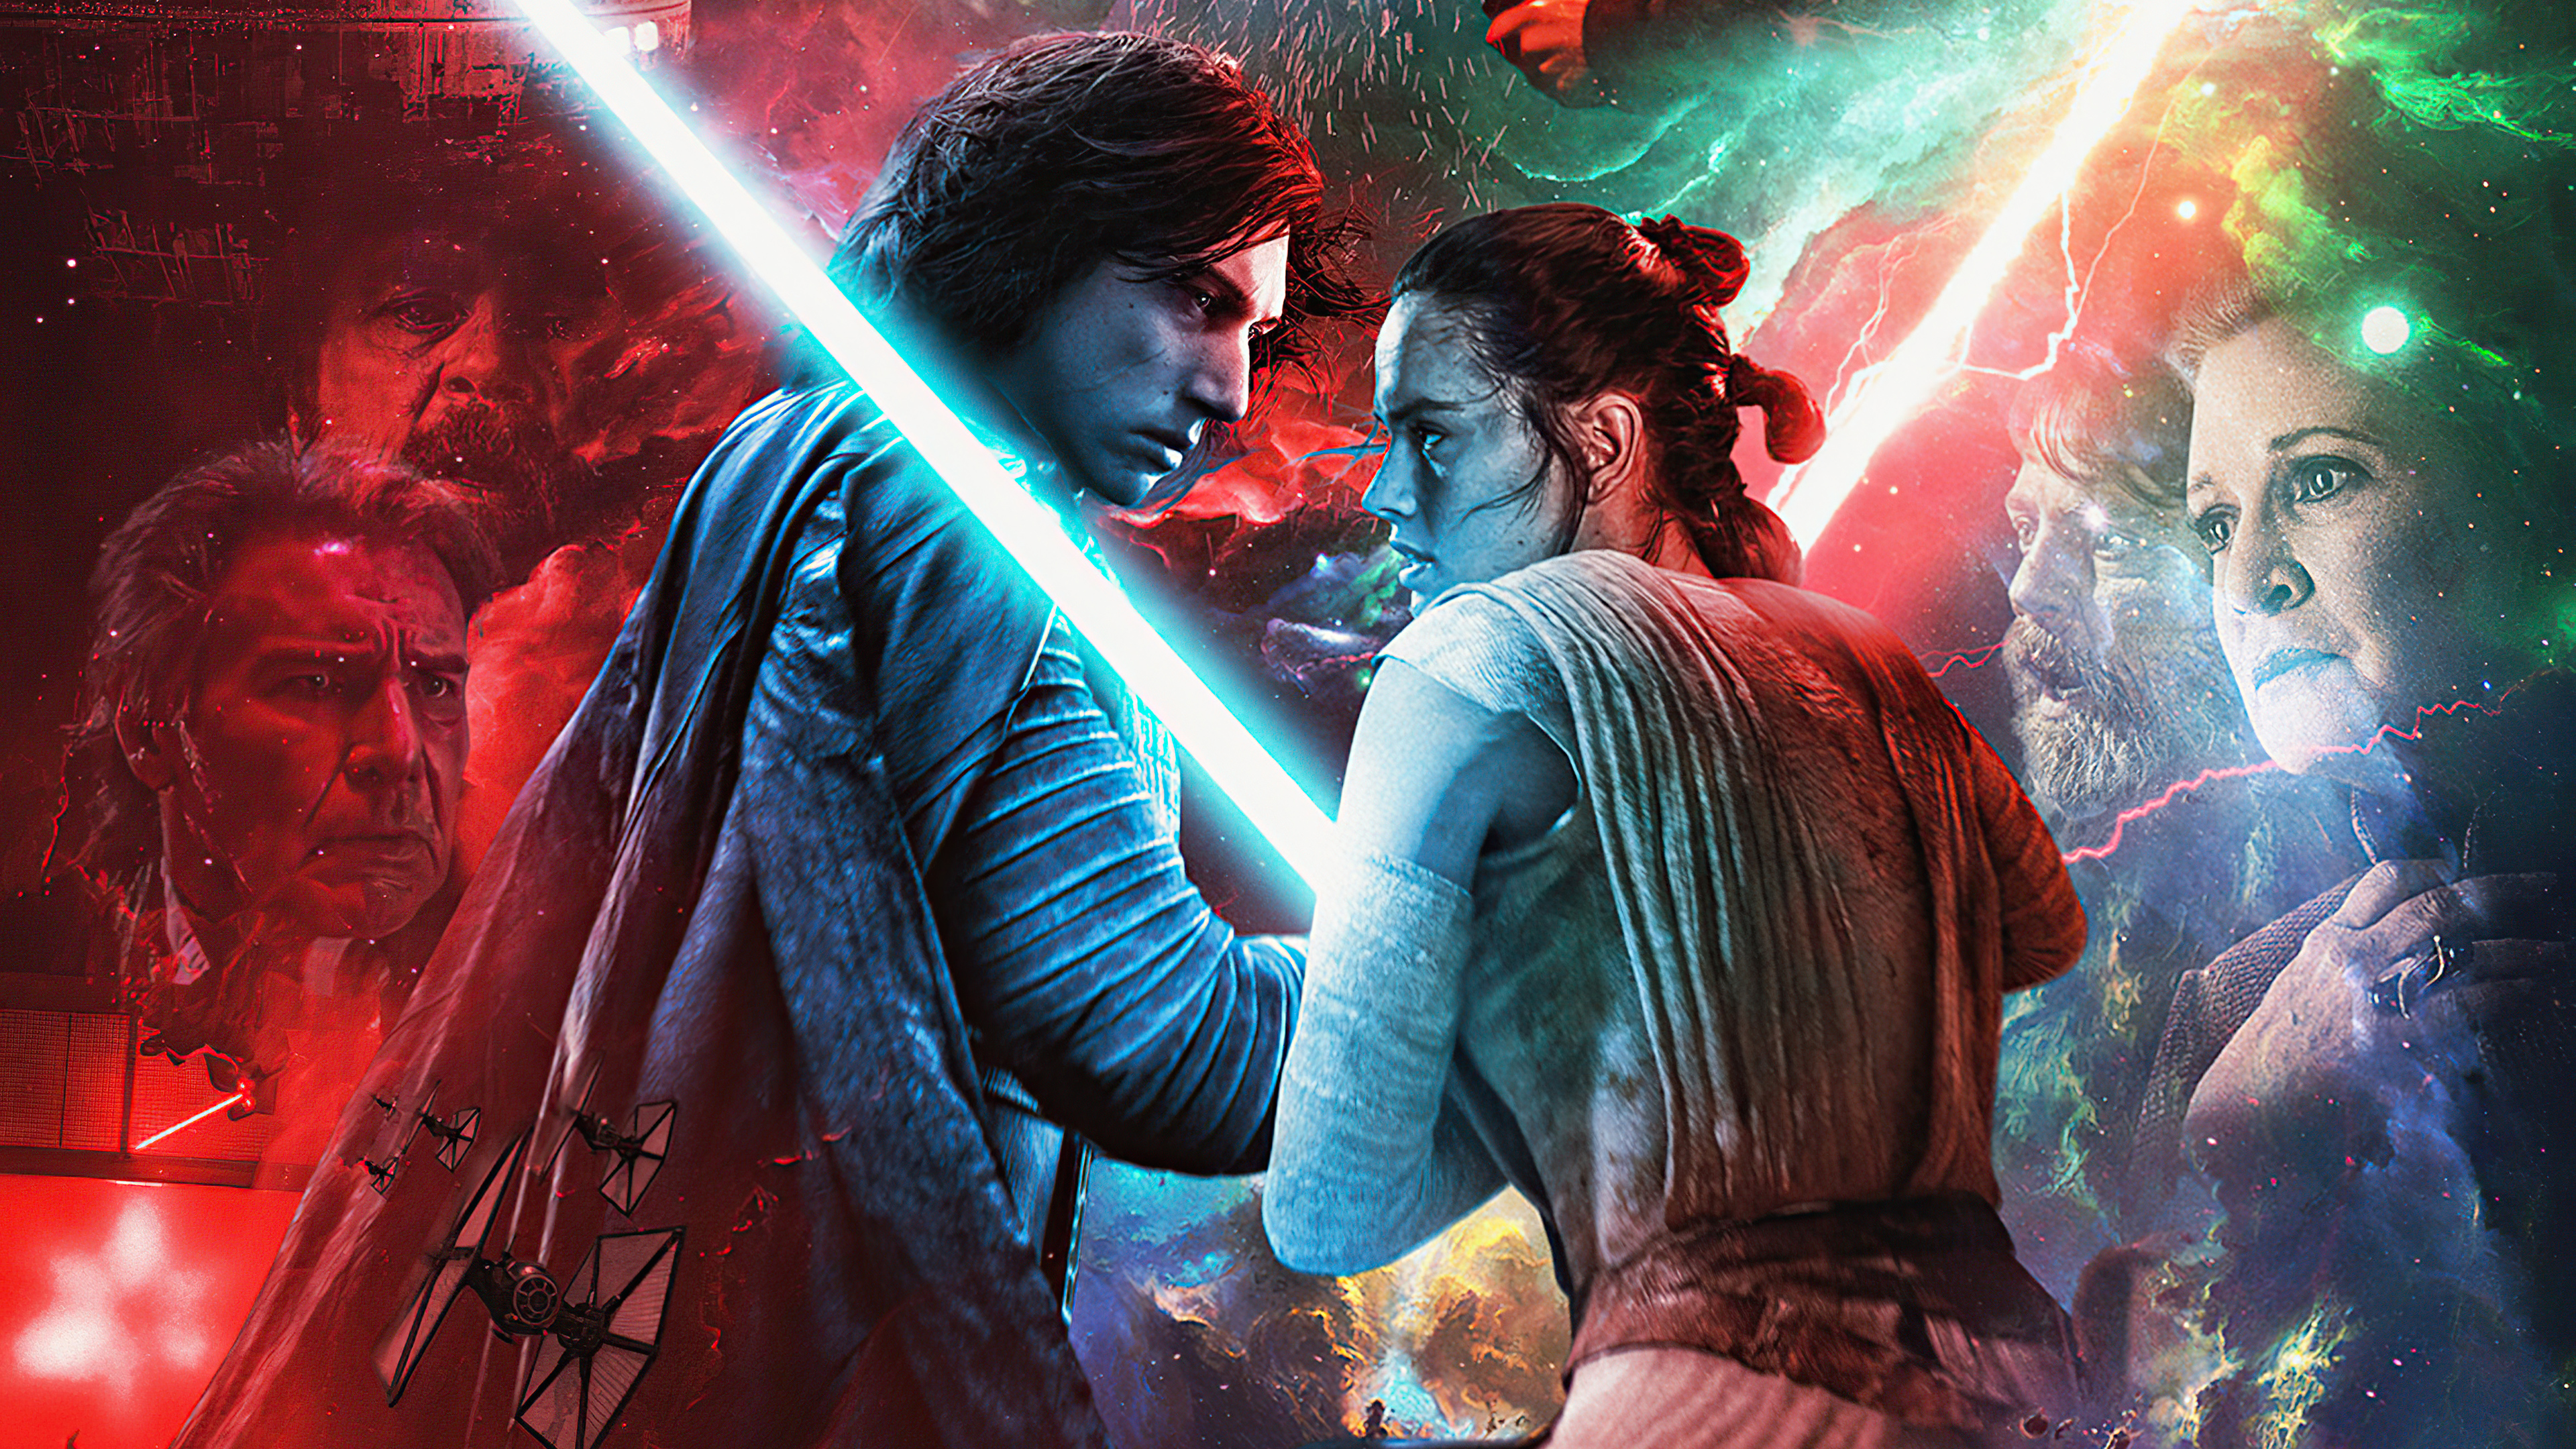 Cùng chiêm ngưỡng bức tranh poster độc đáo của Star Wars The Rise of Skywalker với độ phân giải 4k nhé! Hãy dành chút thời gian để ngắm nhìn chi tiết từng góc cạnh trên bức tranh đầy mê hoặc này.